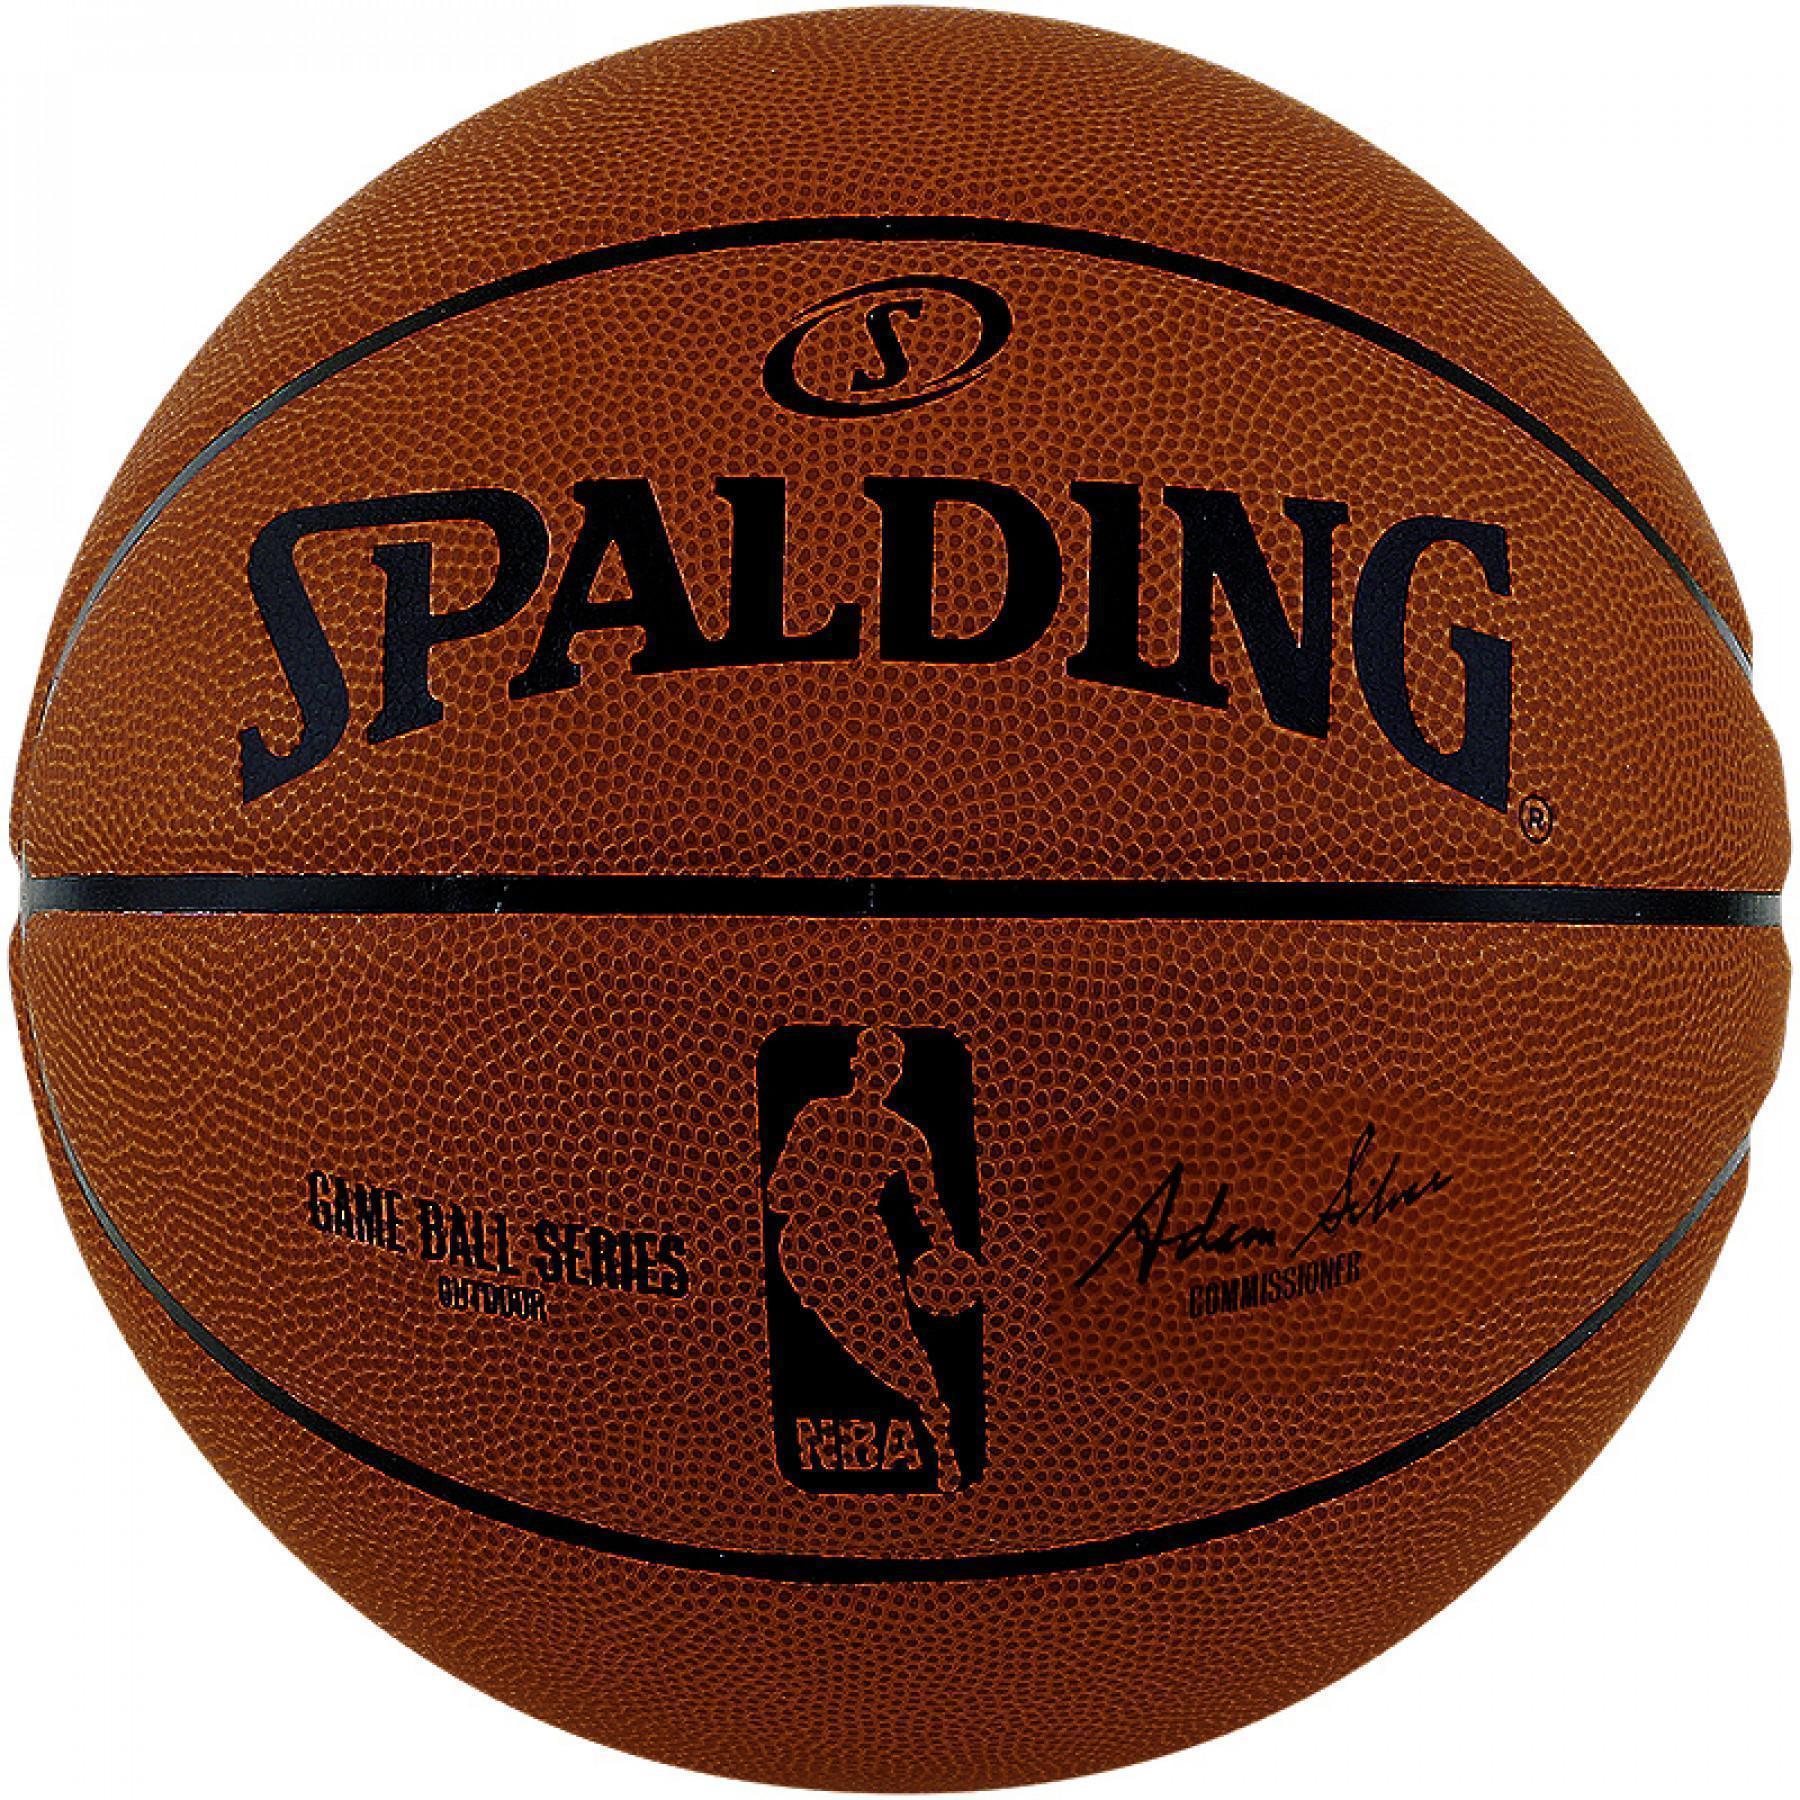 Balloon Spalding NBA Game Ball Replica Taille 7